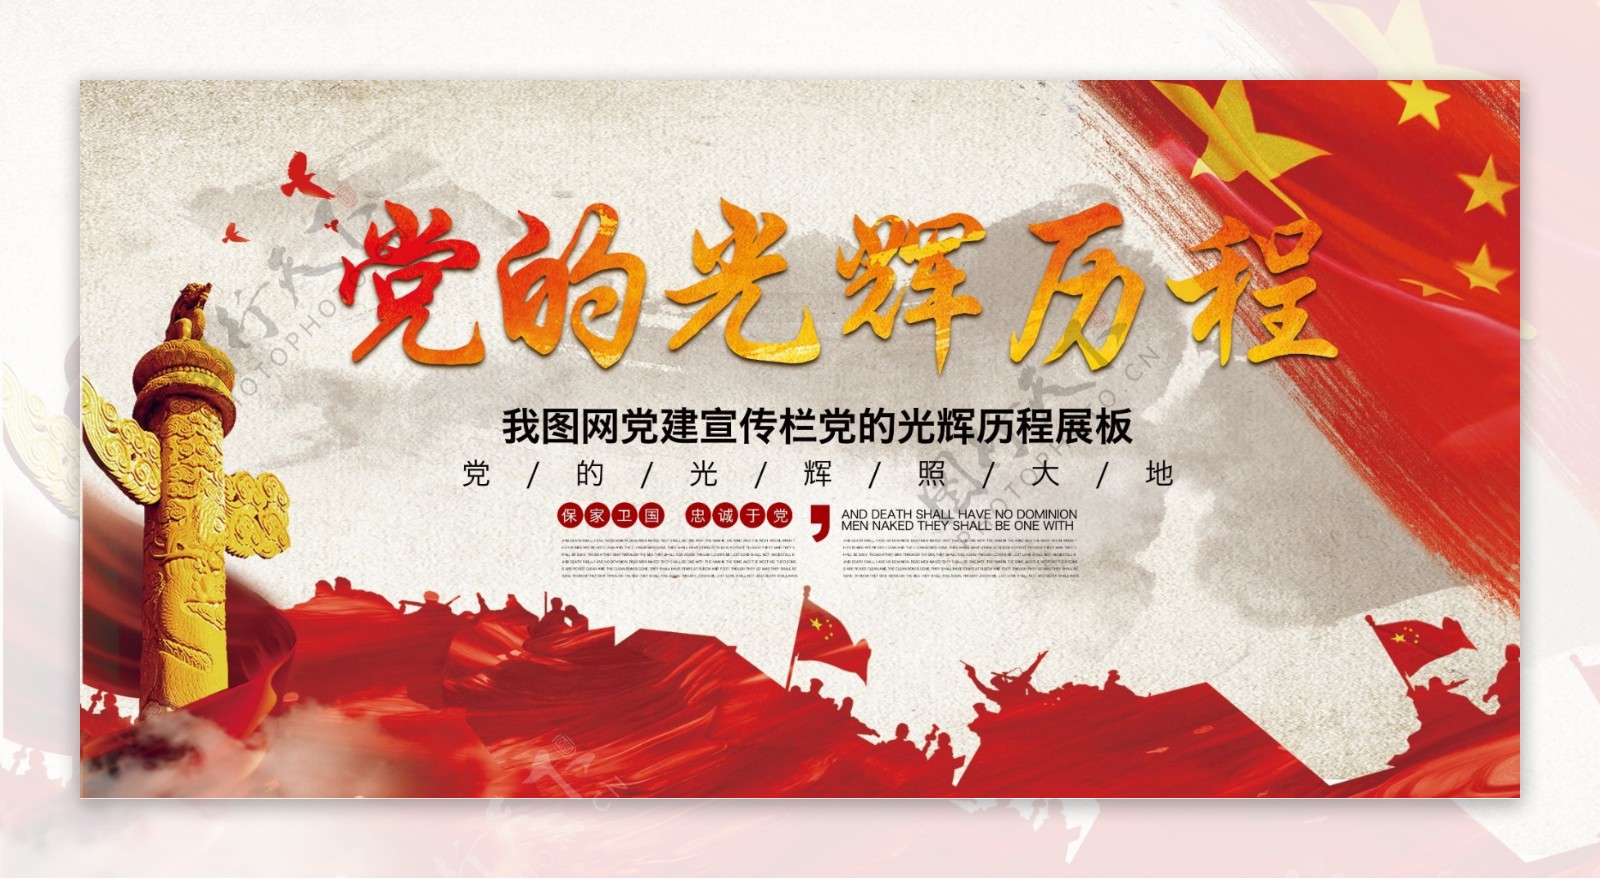 五星红旗企业党建文化党的光辉历程宣传展板